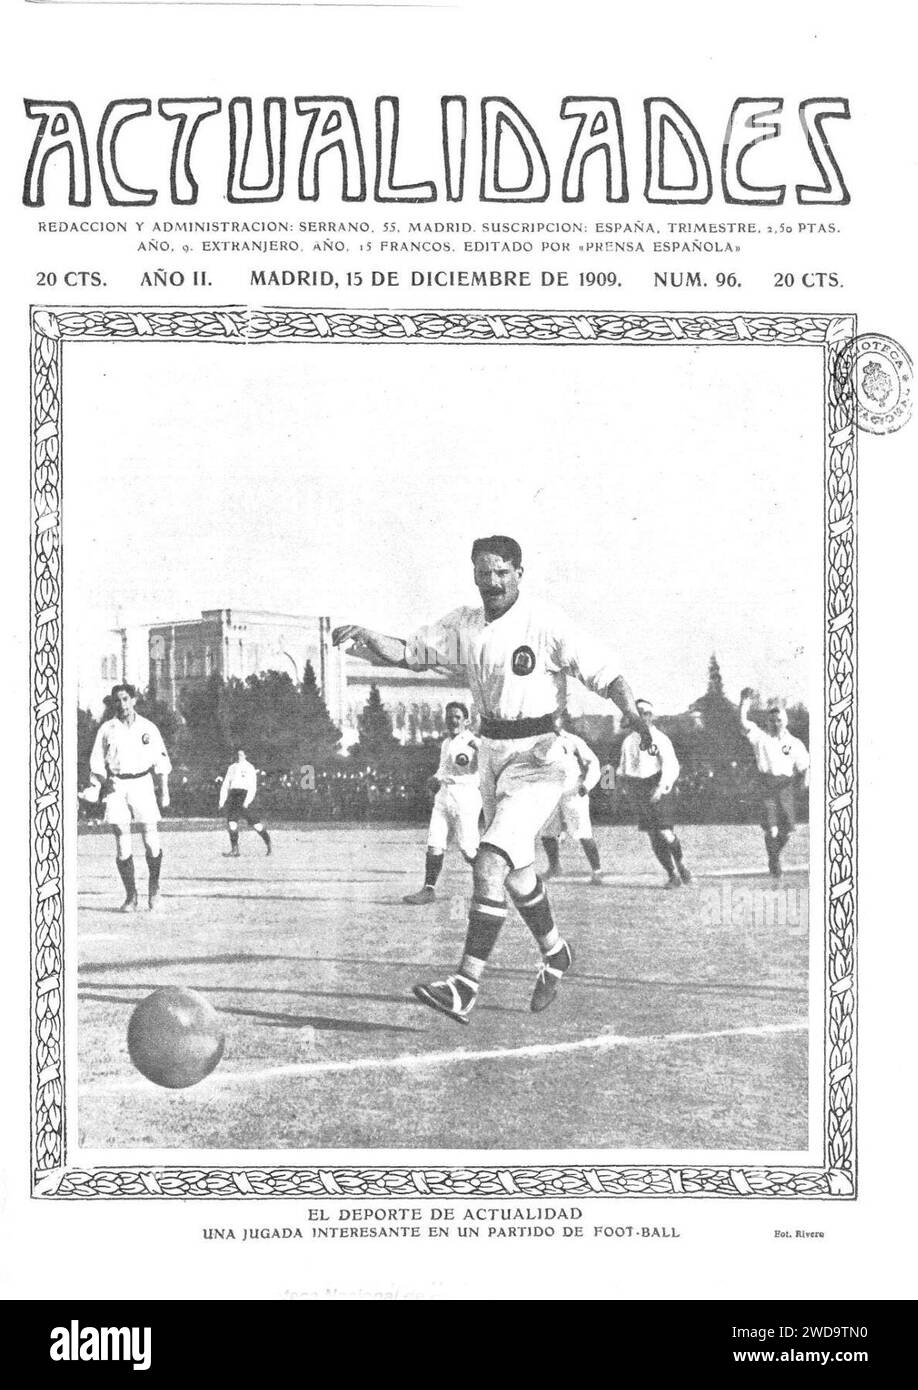 1909-12-15, Actualidades, El deporte de actualidad, Una jugada interesante en un partido de foot-ball, Rivero. Stock Photo